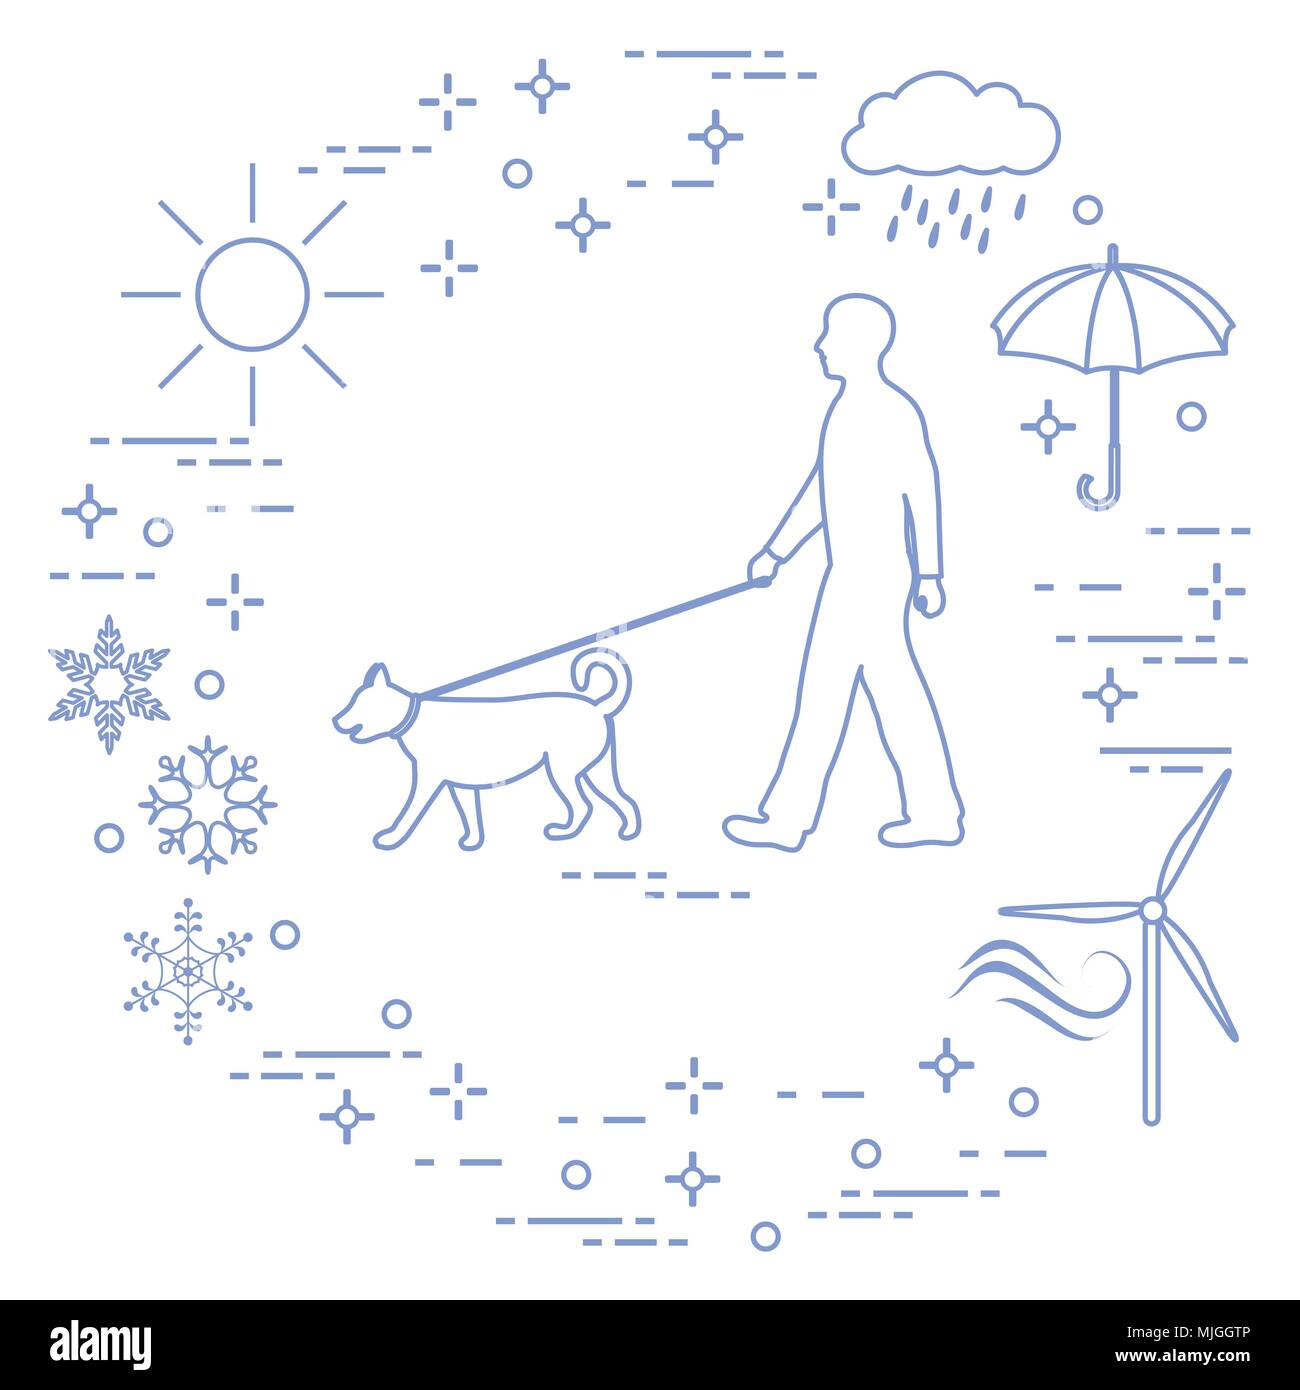 Mann ein Hund an der Leine bei jedem Wetter. Sonne, Wolke, Regen,  Regenschirm, Schneeflocken, Wind, wind Generator Stock-Vektorgrafik - Alamy